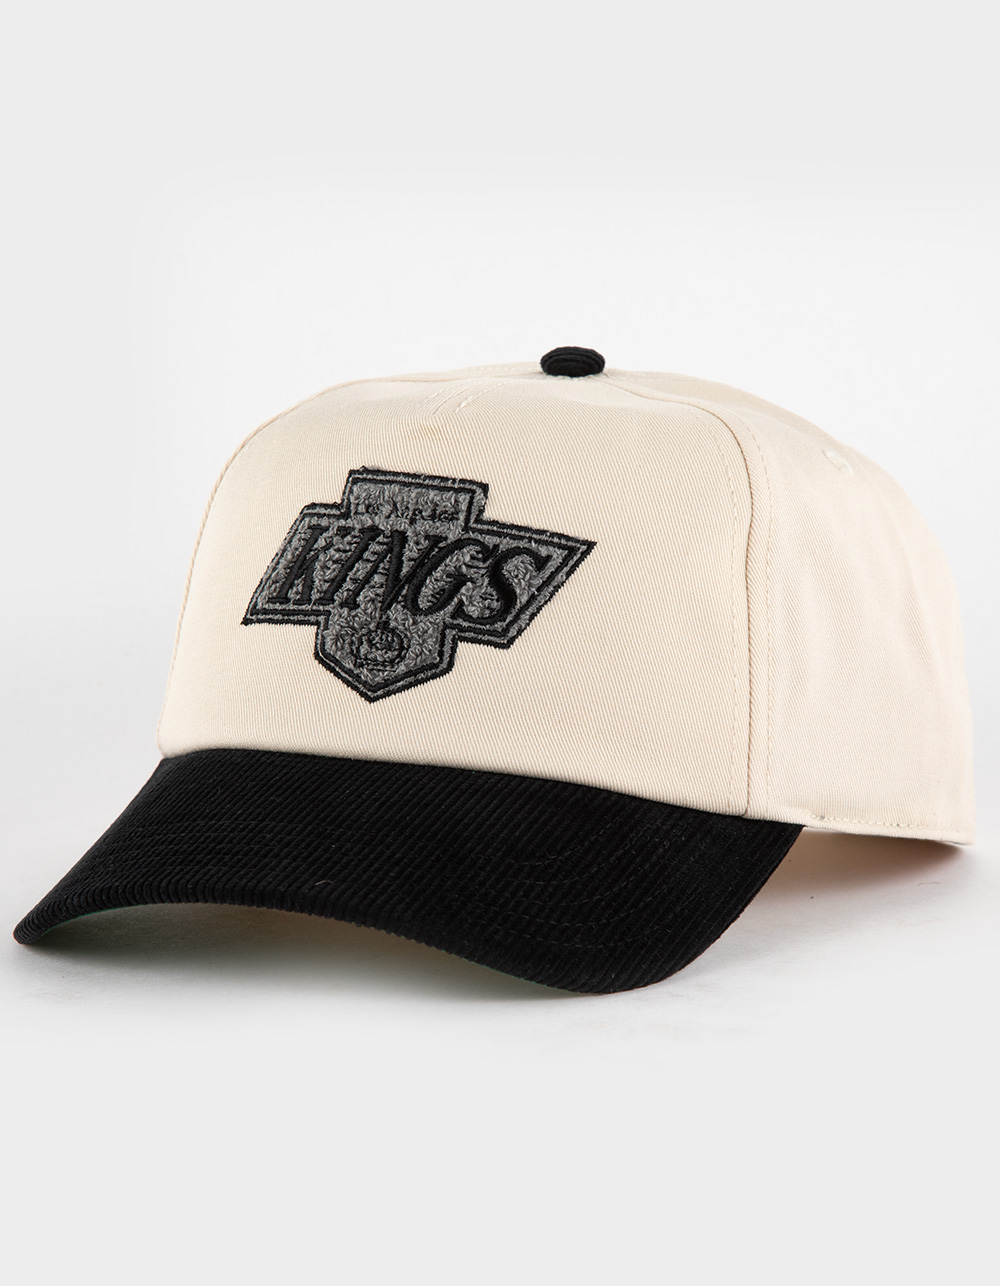 AMERICAN NEEDLE Los Angeles Kings Snapback Hat